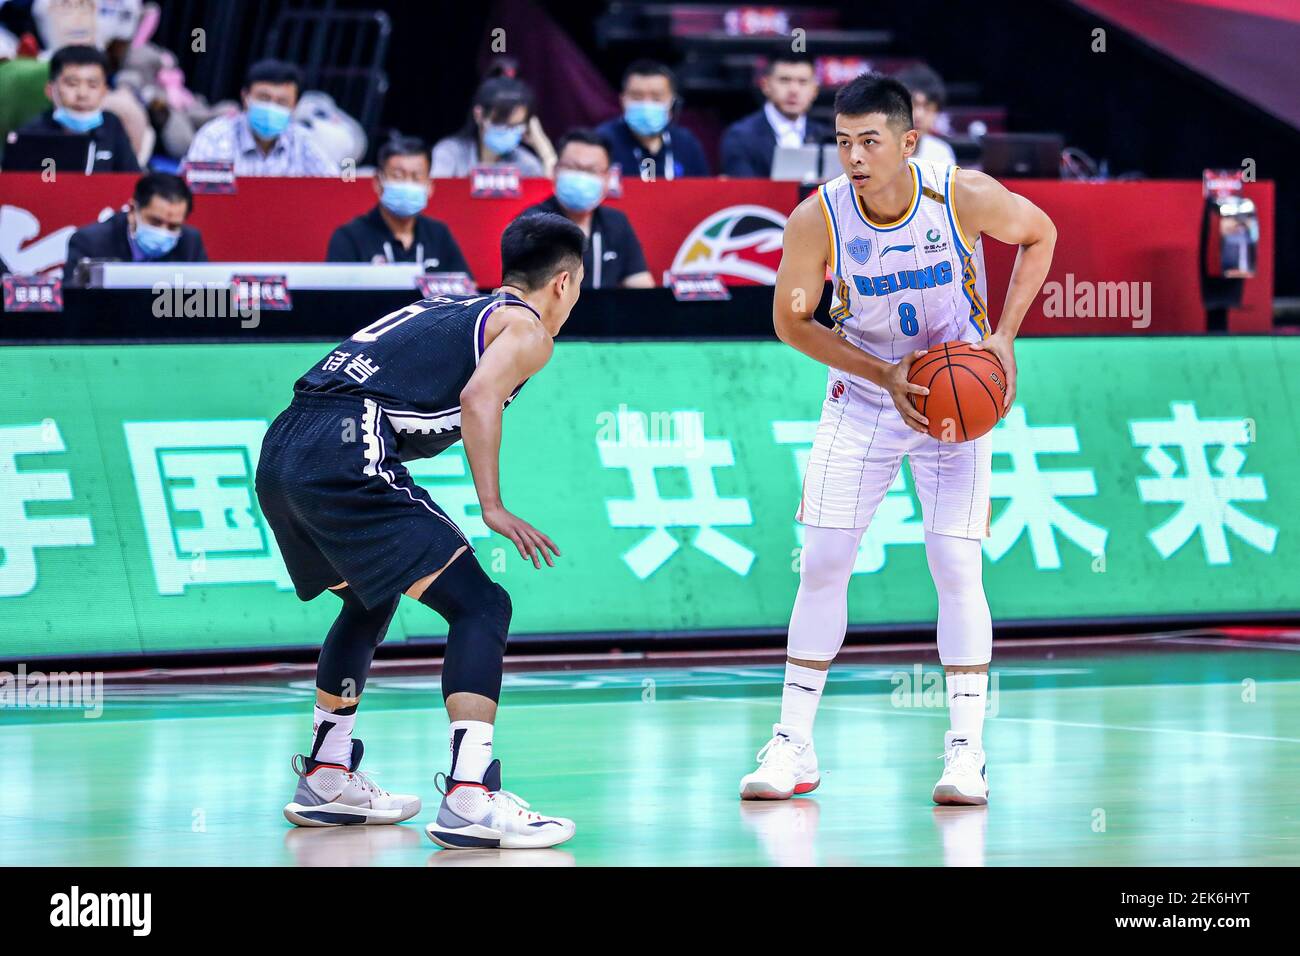 Le joueur de basket-ball professionnel chinois Fang Shuo de Beijing  Shougang Ducks, à droite, garde le ballon pendant un match à la première  étape de la reprise de l'Association chinoise de basket-ball (